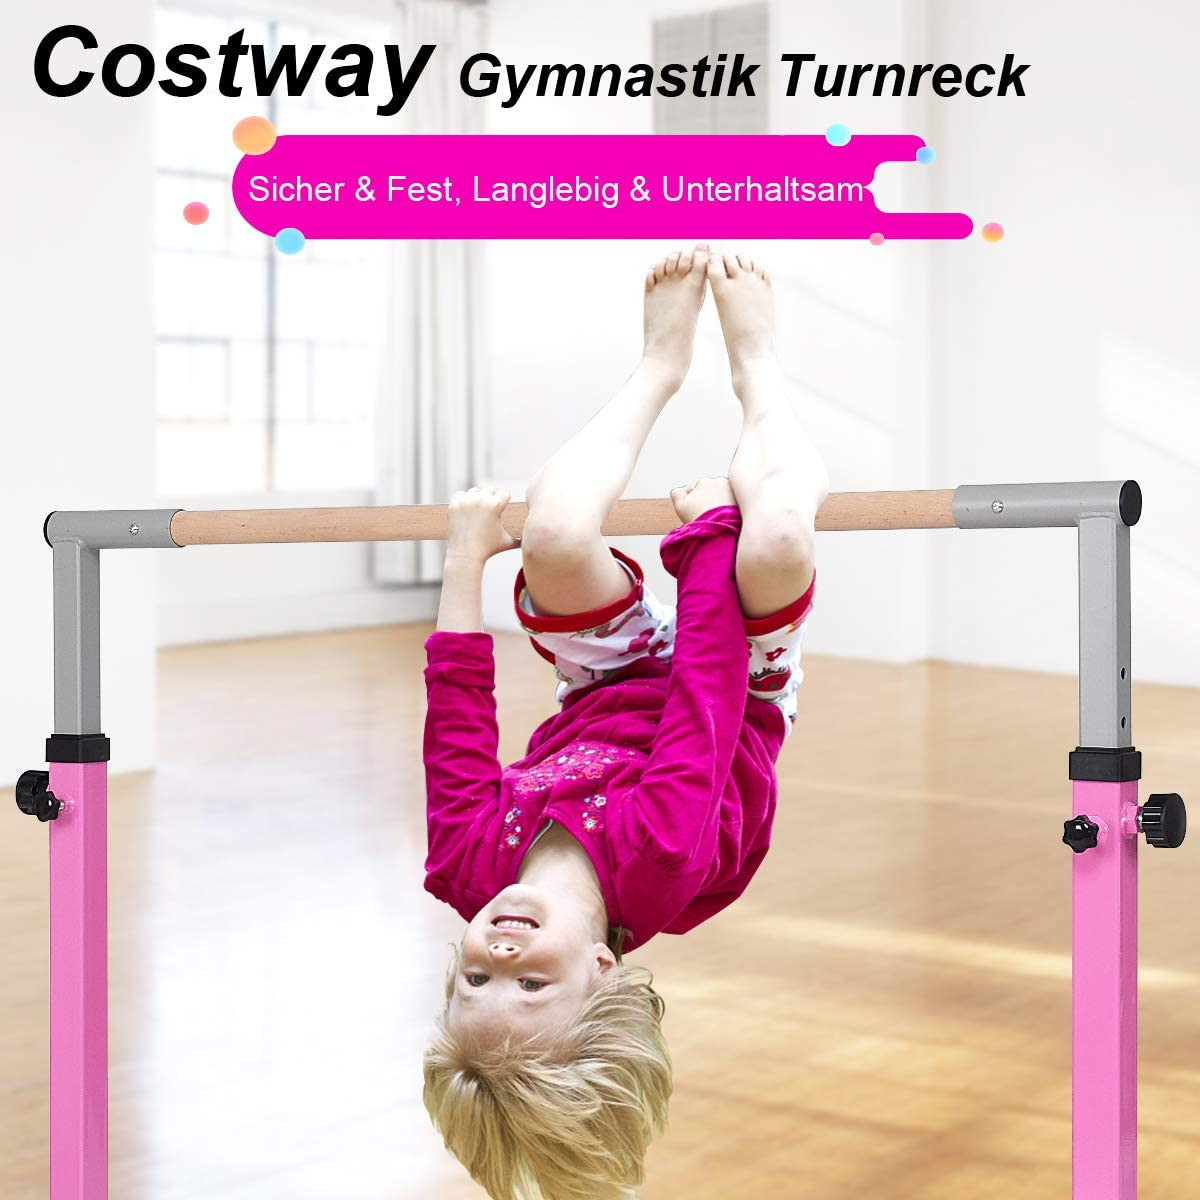 COSTWAY Gymnastik Turnreck Reckanlage, Rosa